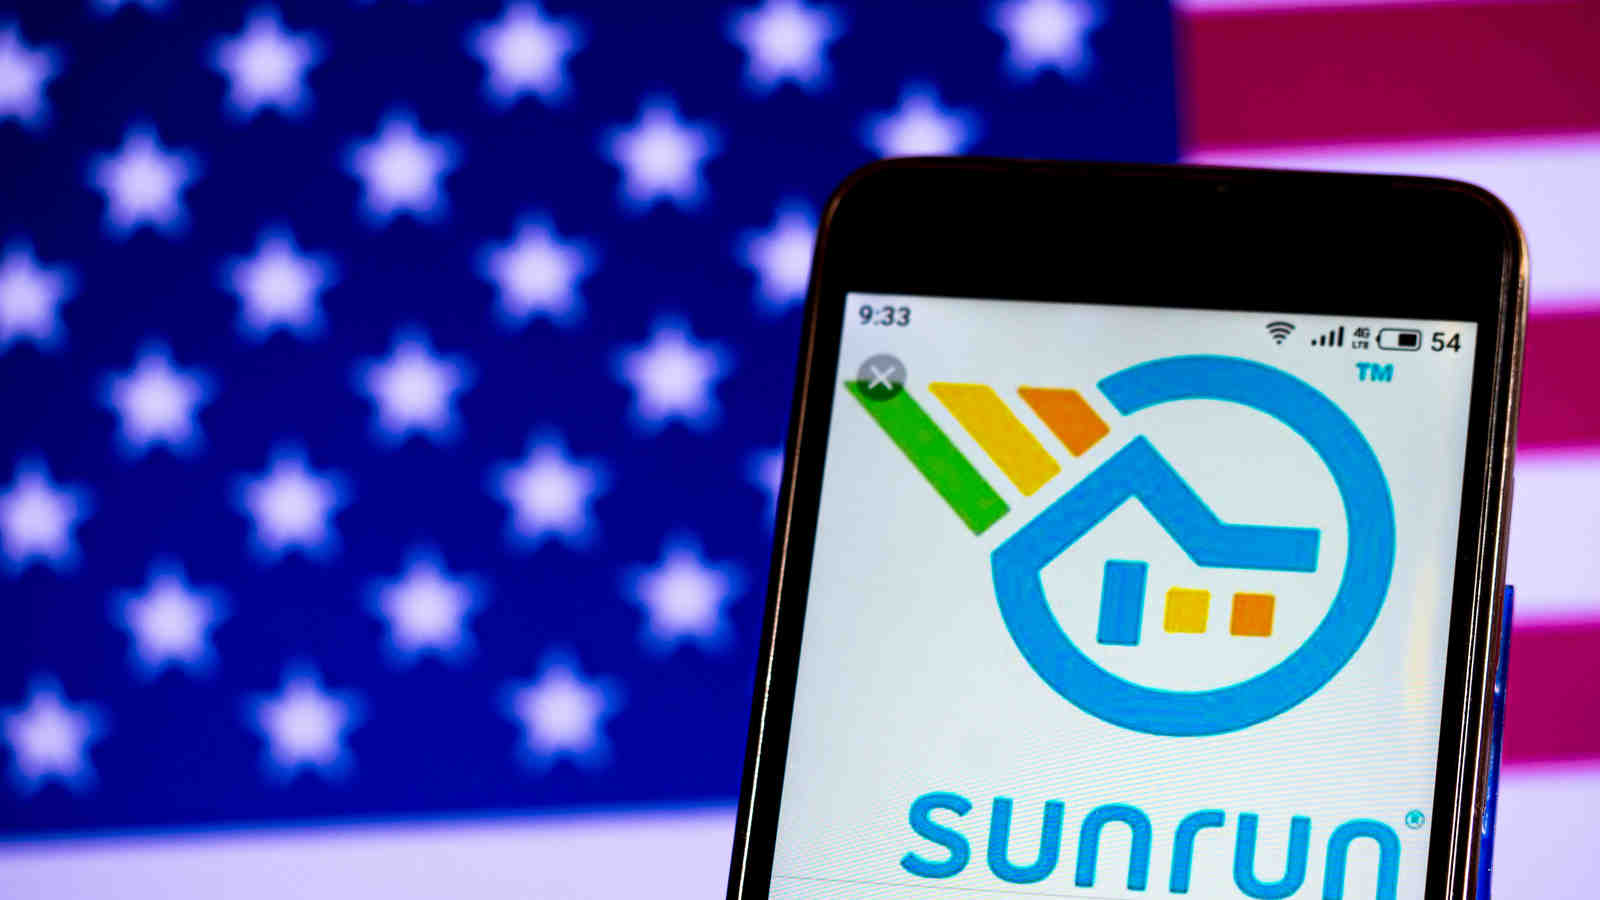 Is Sunrun better than SunPower?